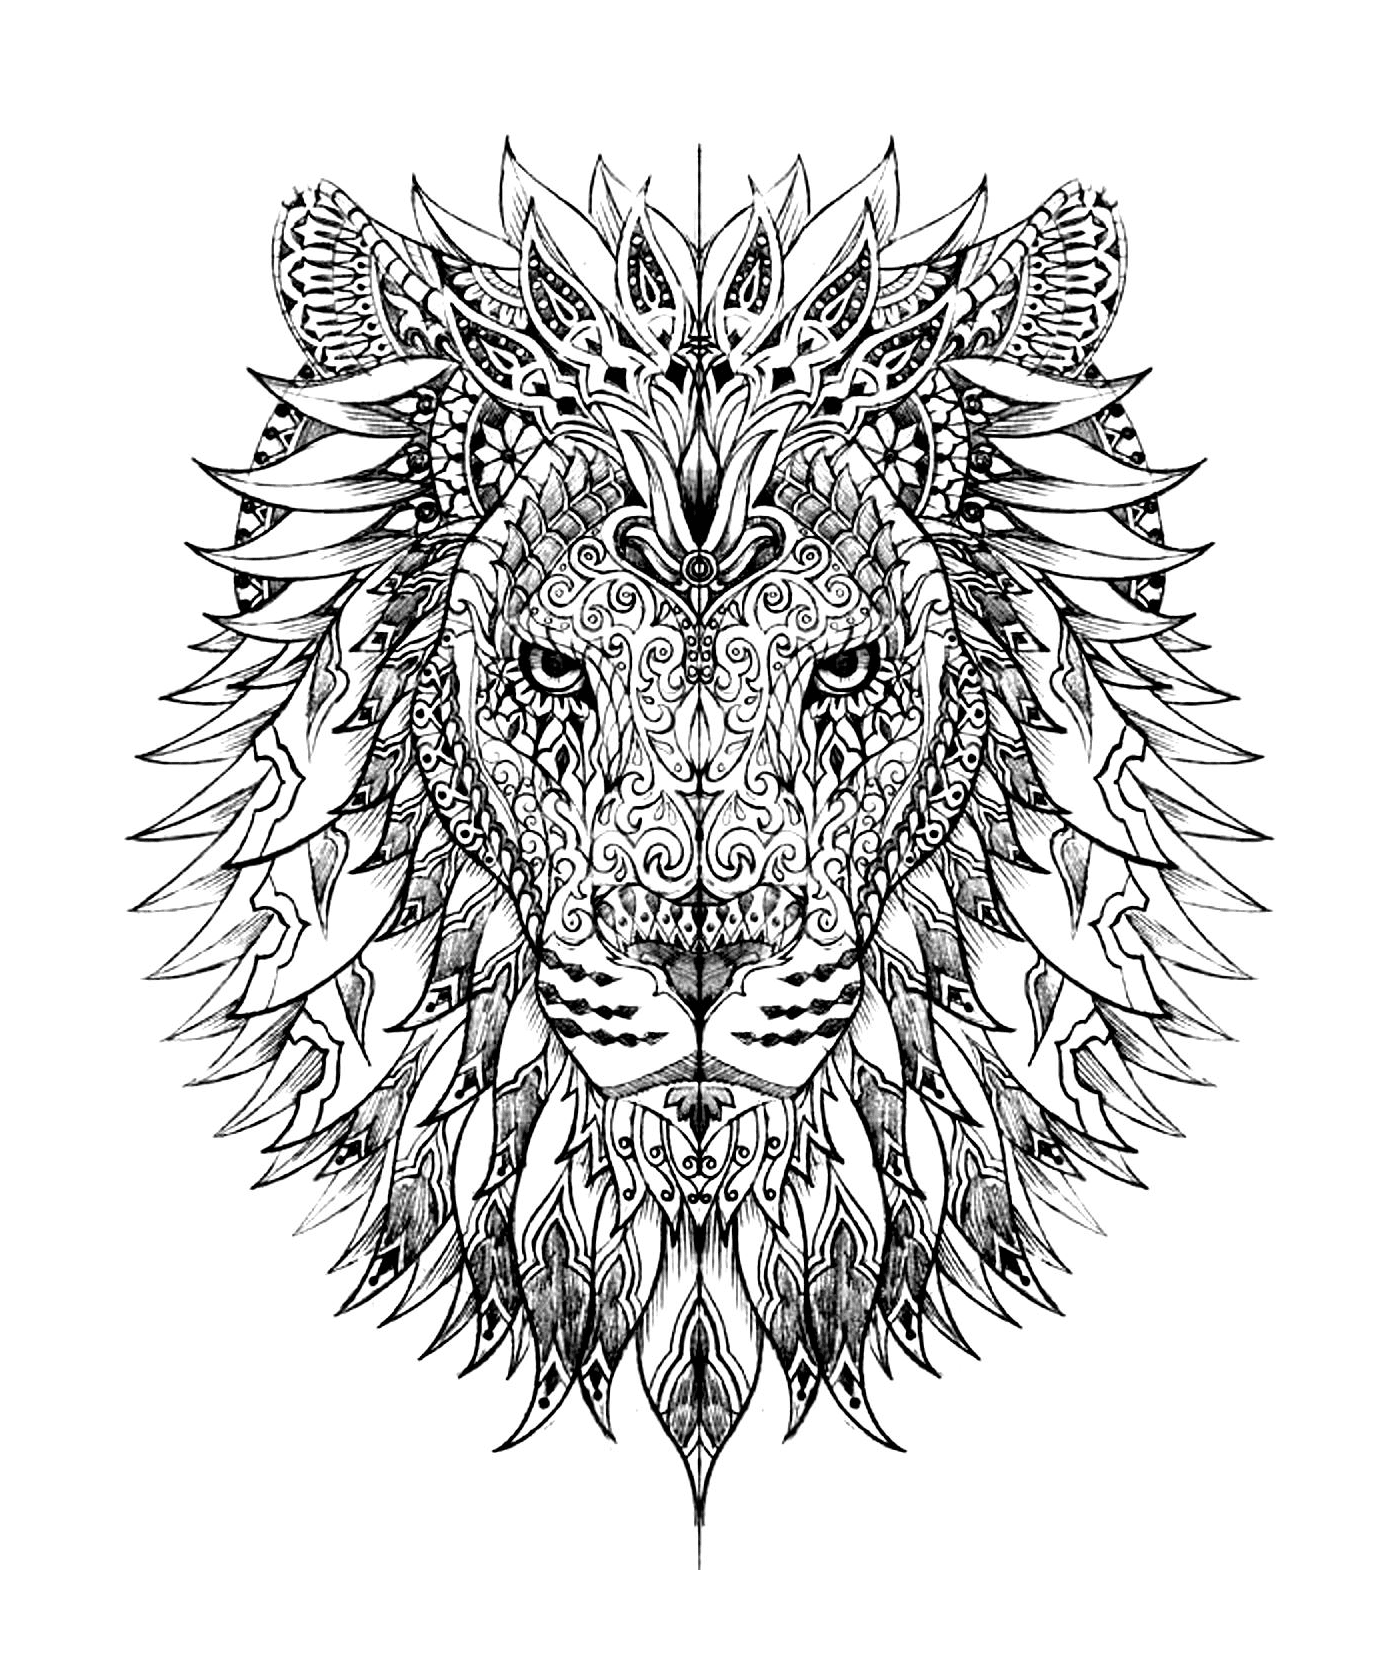  Der Kopf eines komplexen Löwen 